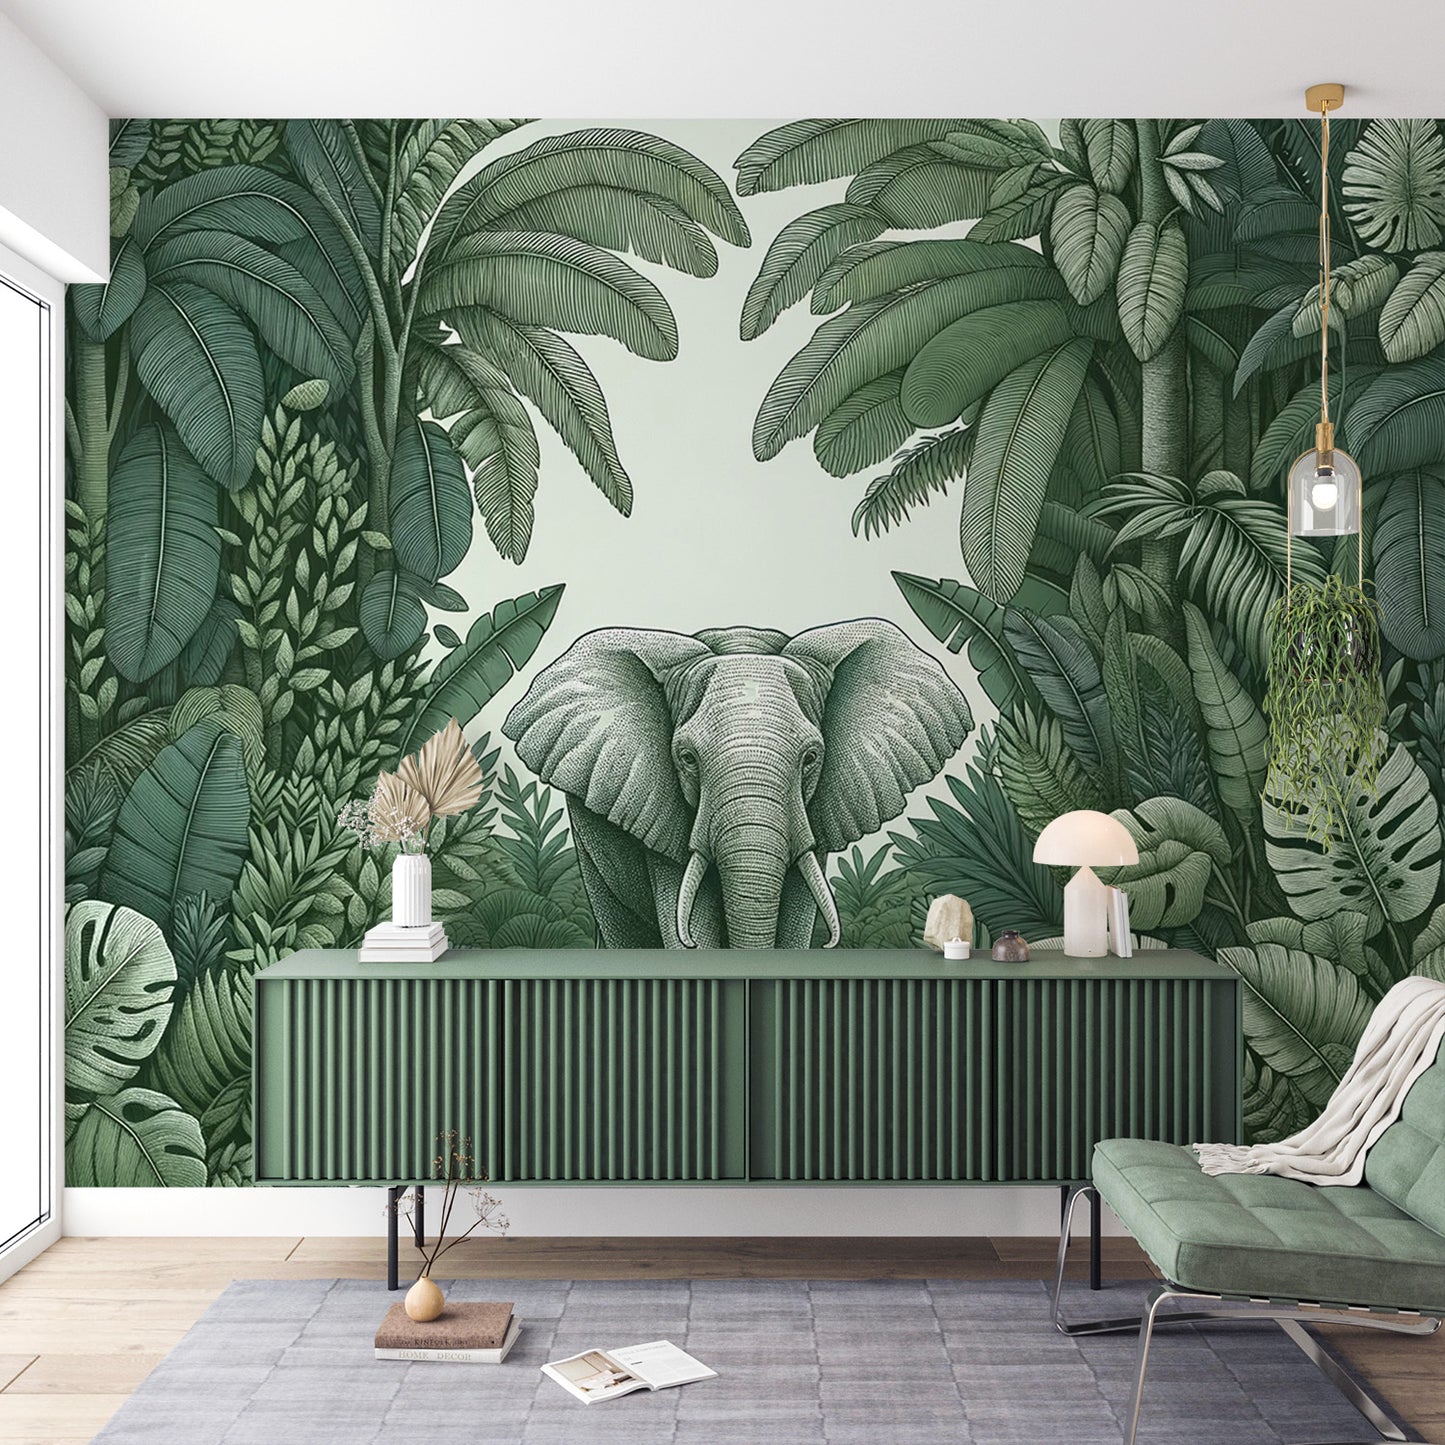 Papier peint jungle verte | Éléphant au milieu des feuillages